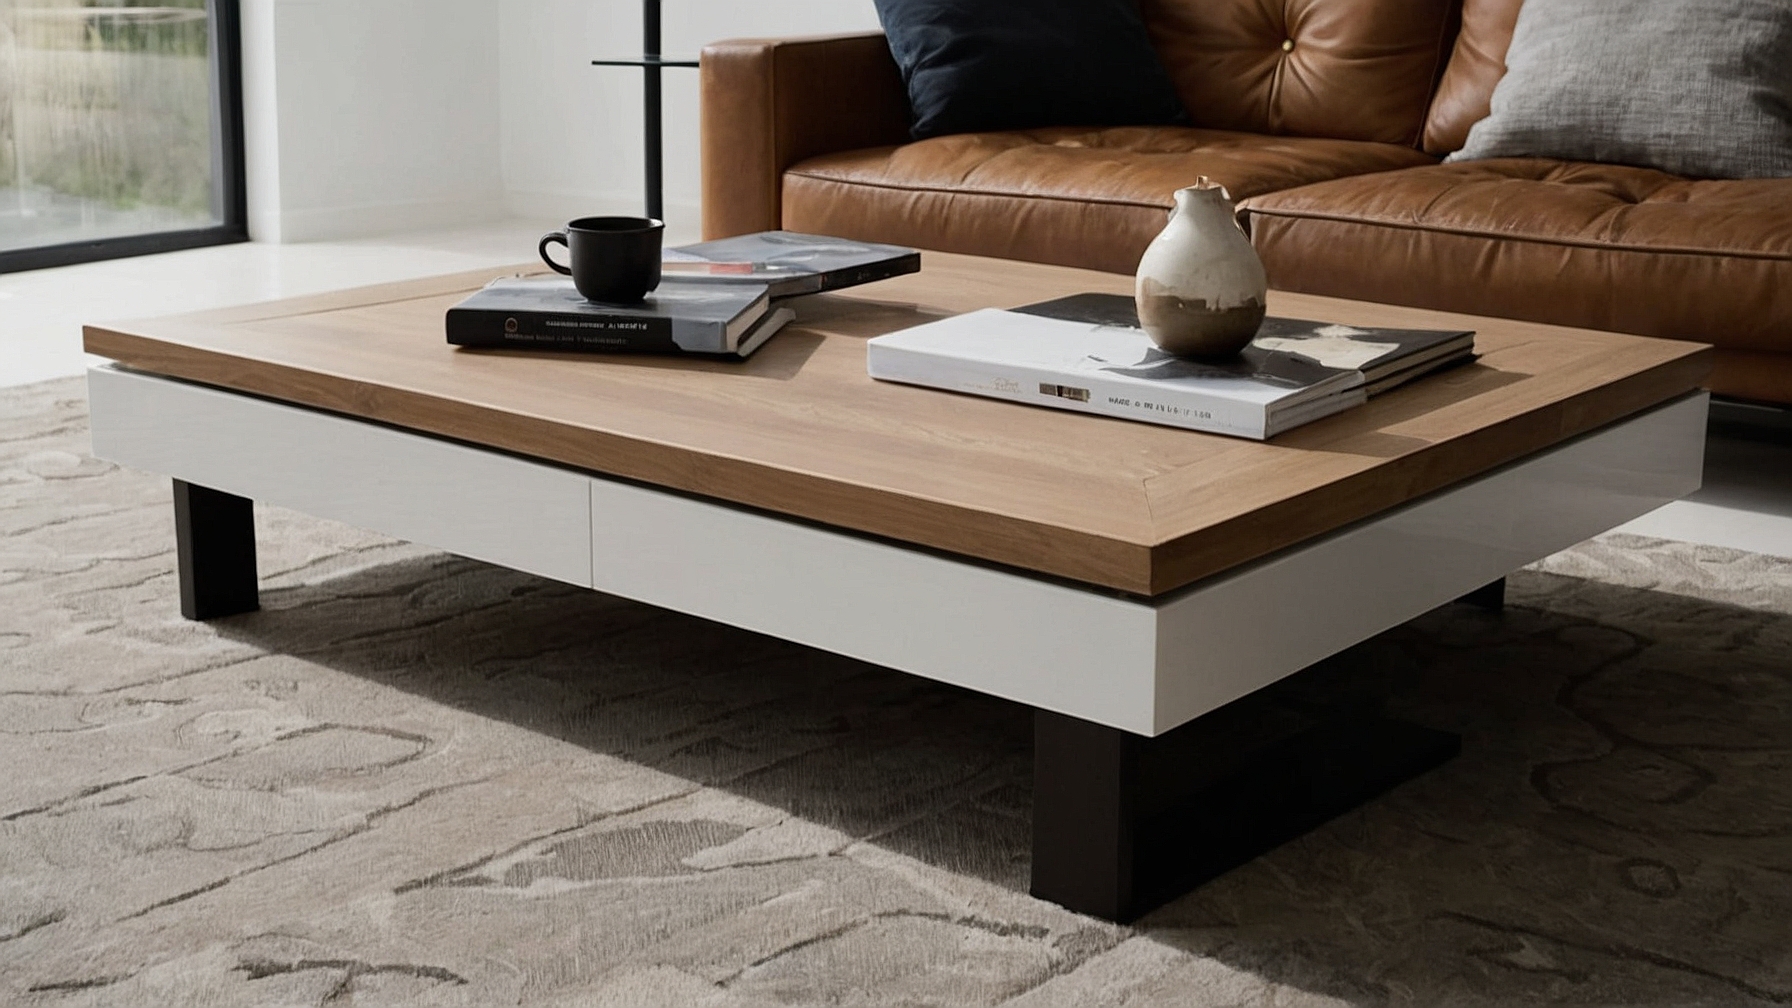 Default Minimalist house Wood Coffee Table Modern Style Timel 1 1